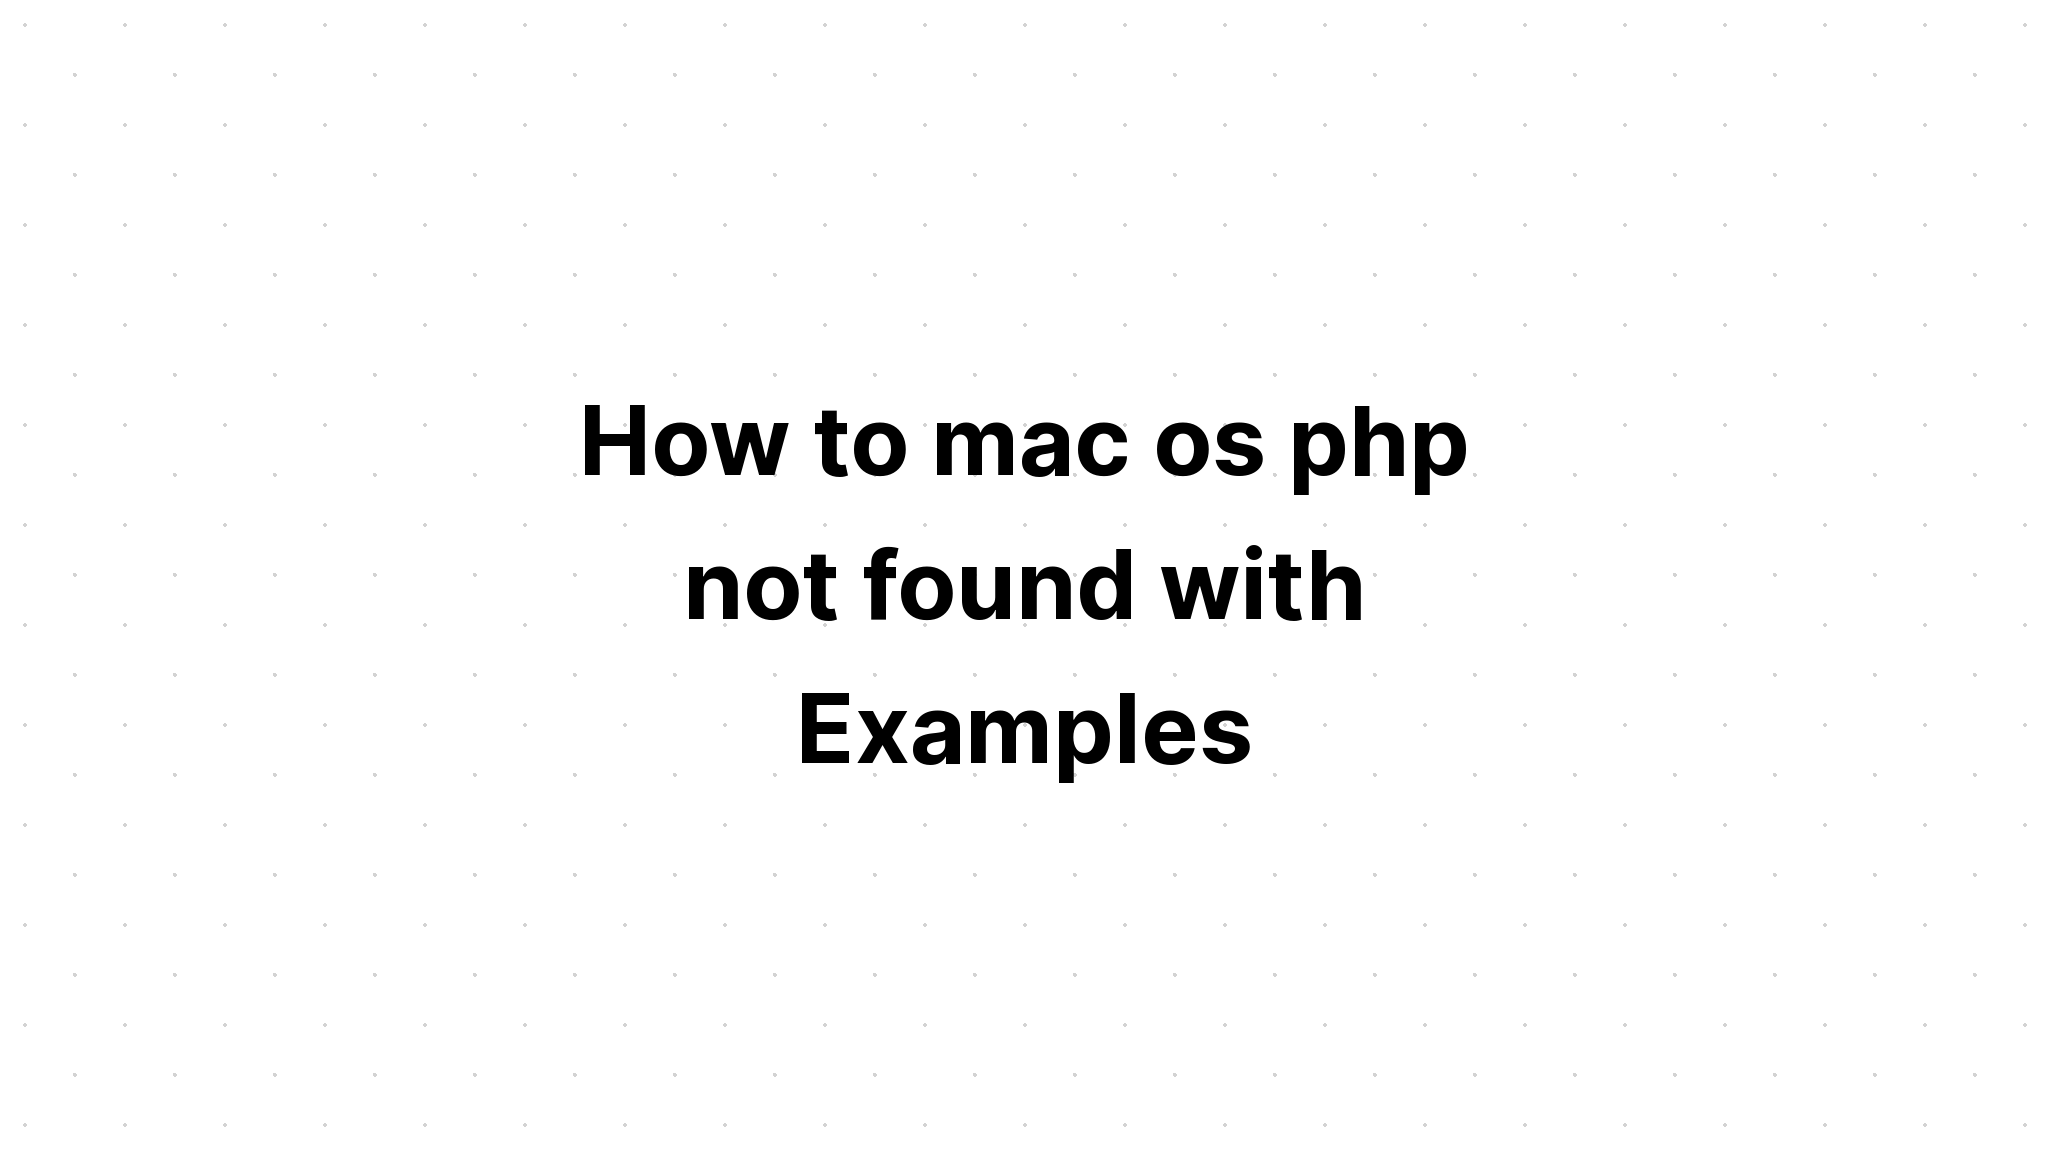 Cách không tìm thấy php mac os với các ví dụ